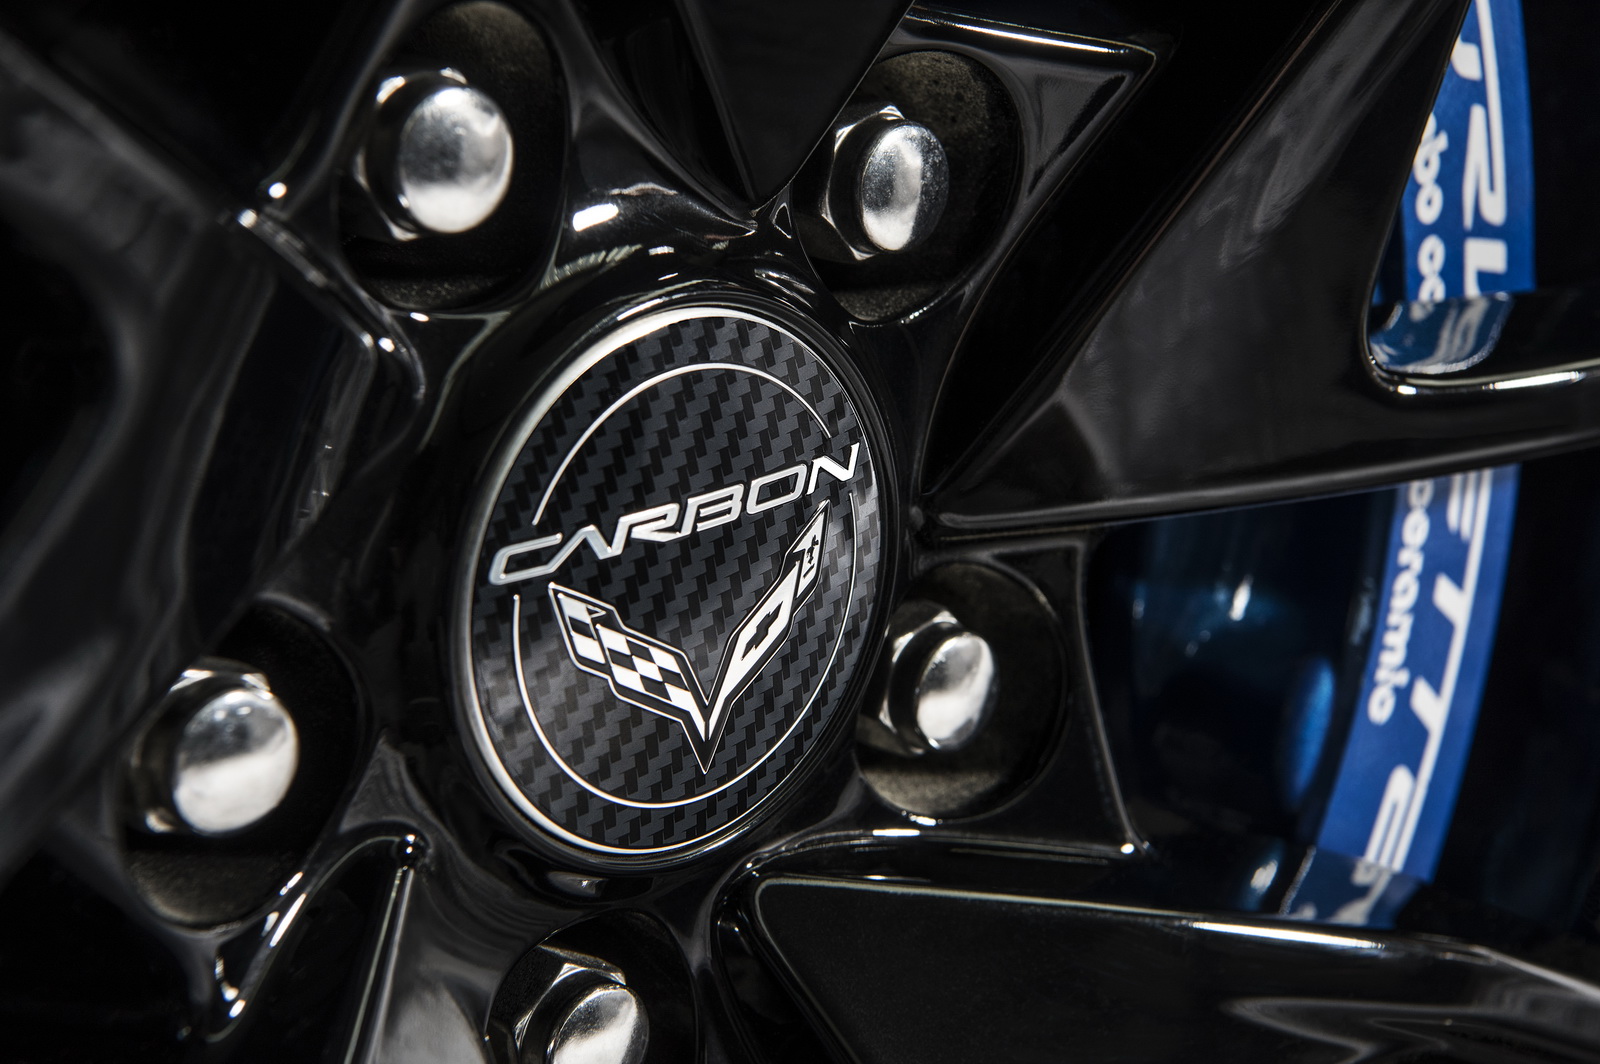 Chevrolet Corvette Carbon 65 Edition